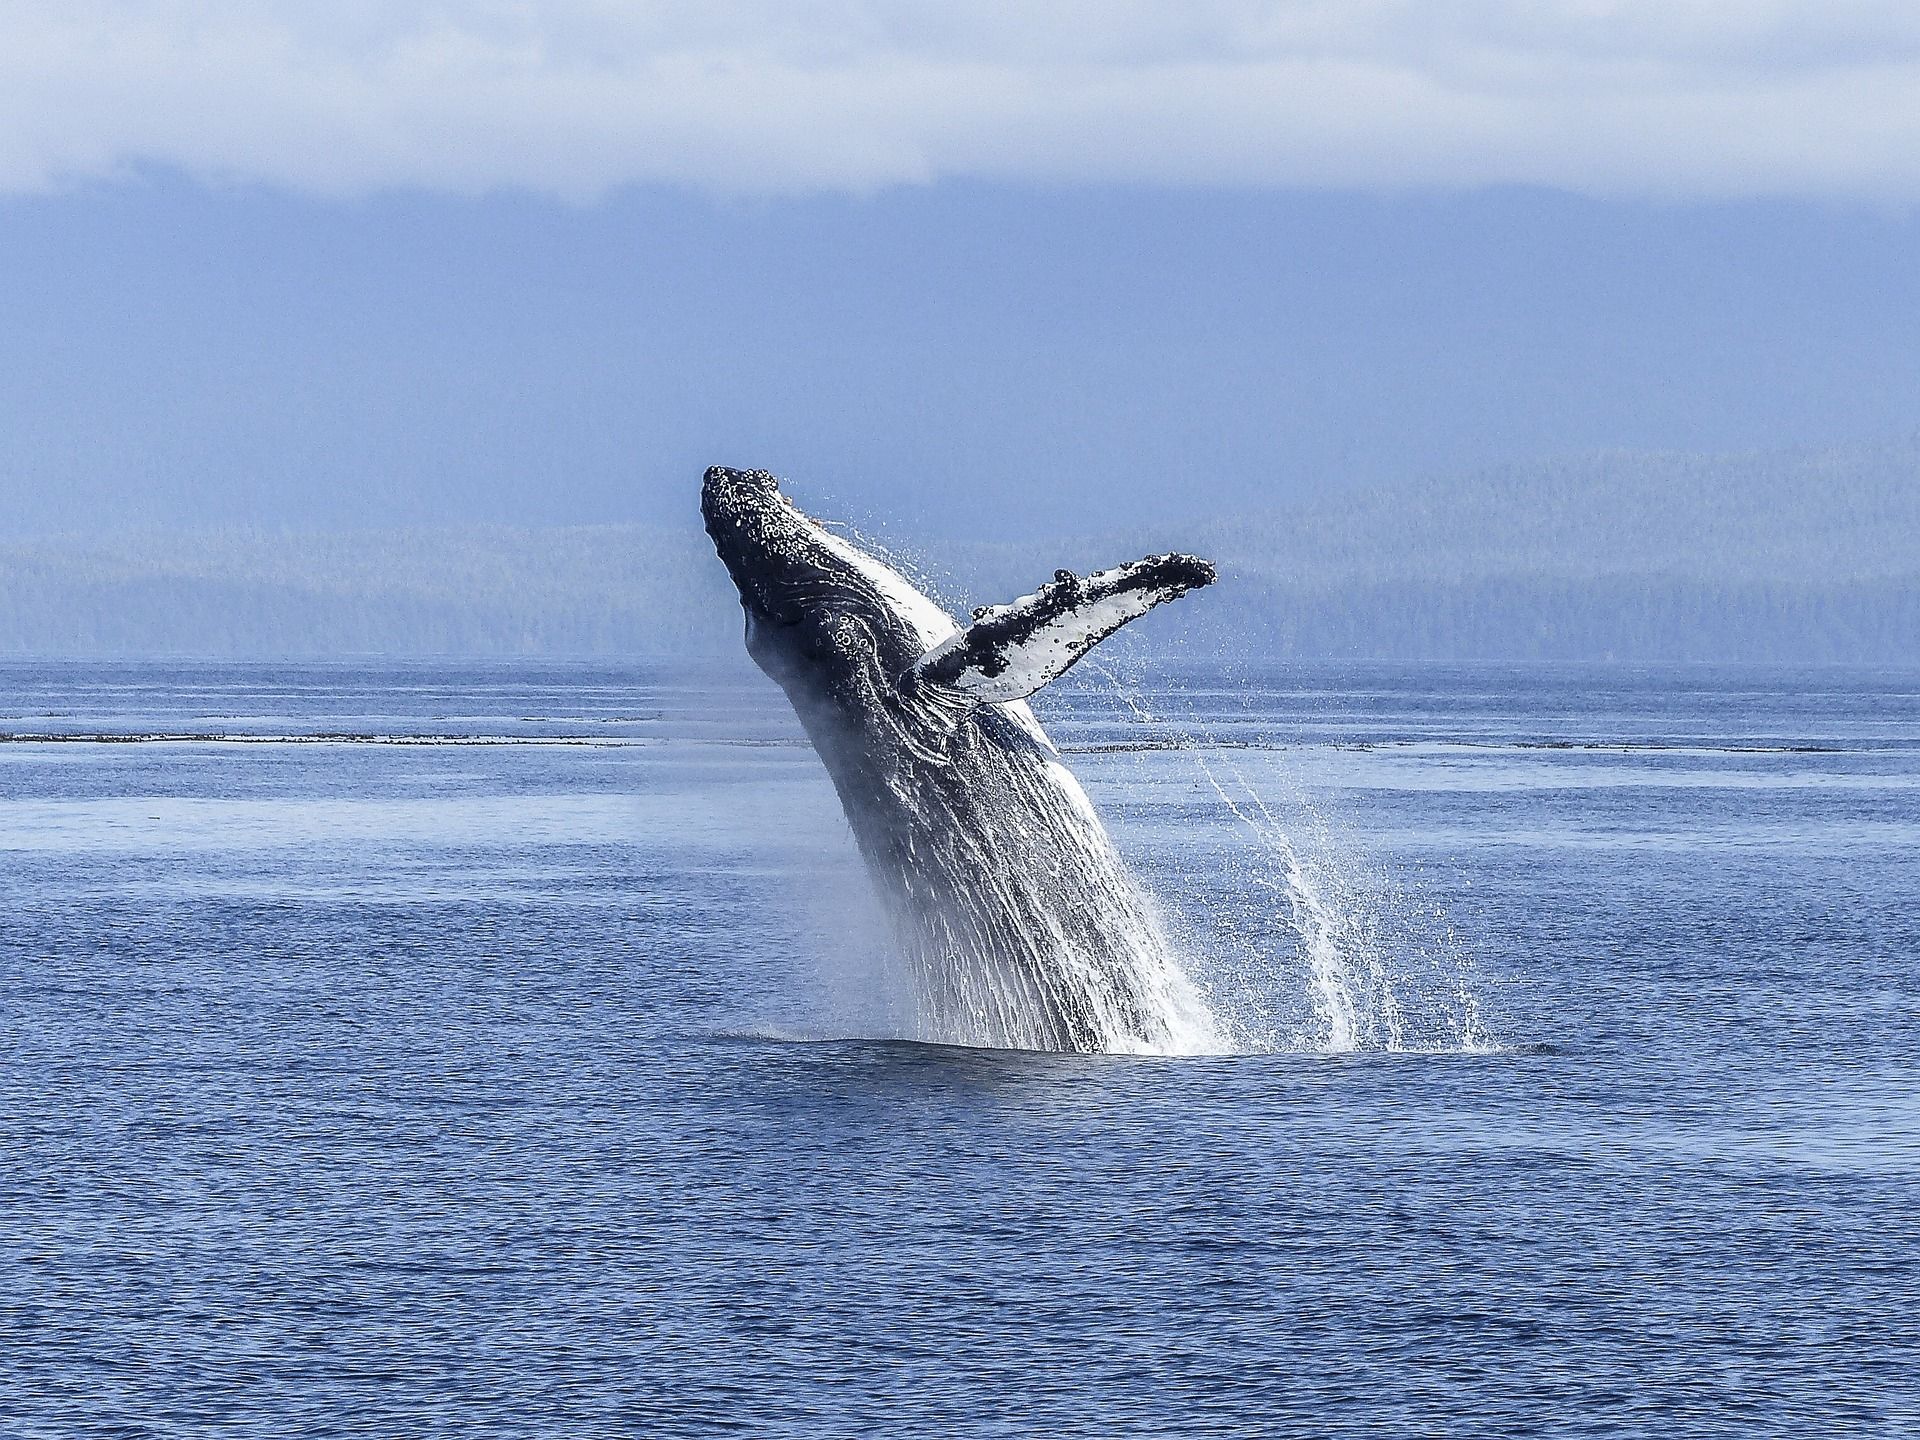 Une baleine à bosse saute en l'air - Image par Brigitte Werner de https://pixabay.com/fr/photos/baleine-%C3%A0-bosse-spectacle-naturel-436120/